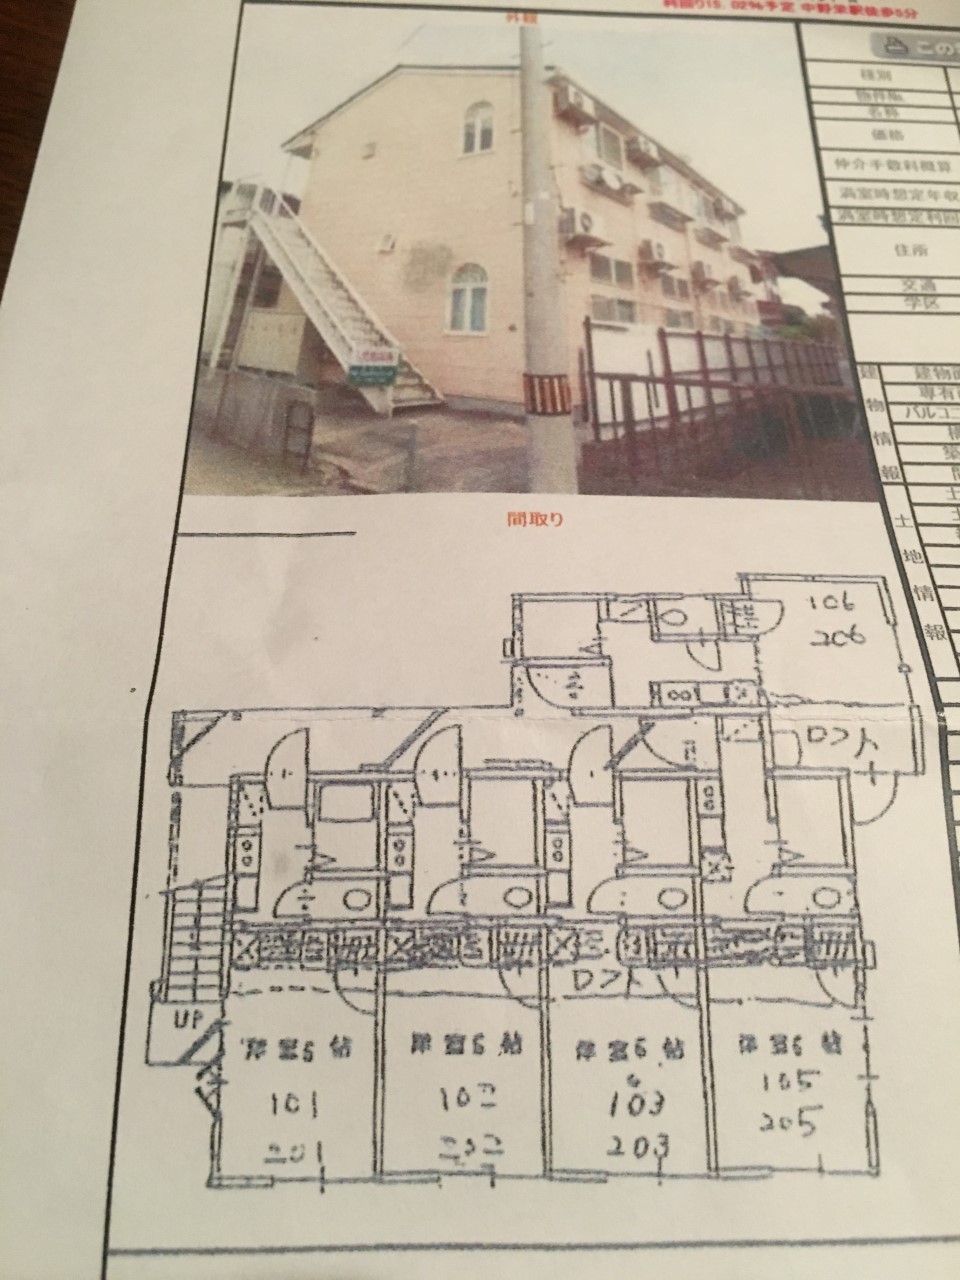 赤井さんが購入した仙台の1棟アパートの参考資料。丸みのある窓が、当時にしてはオシャレだった。 